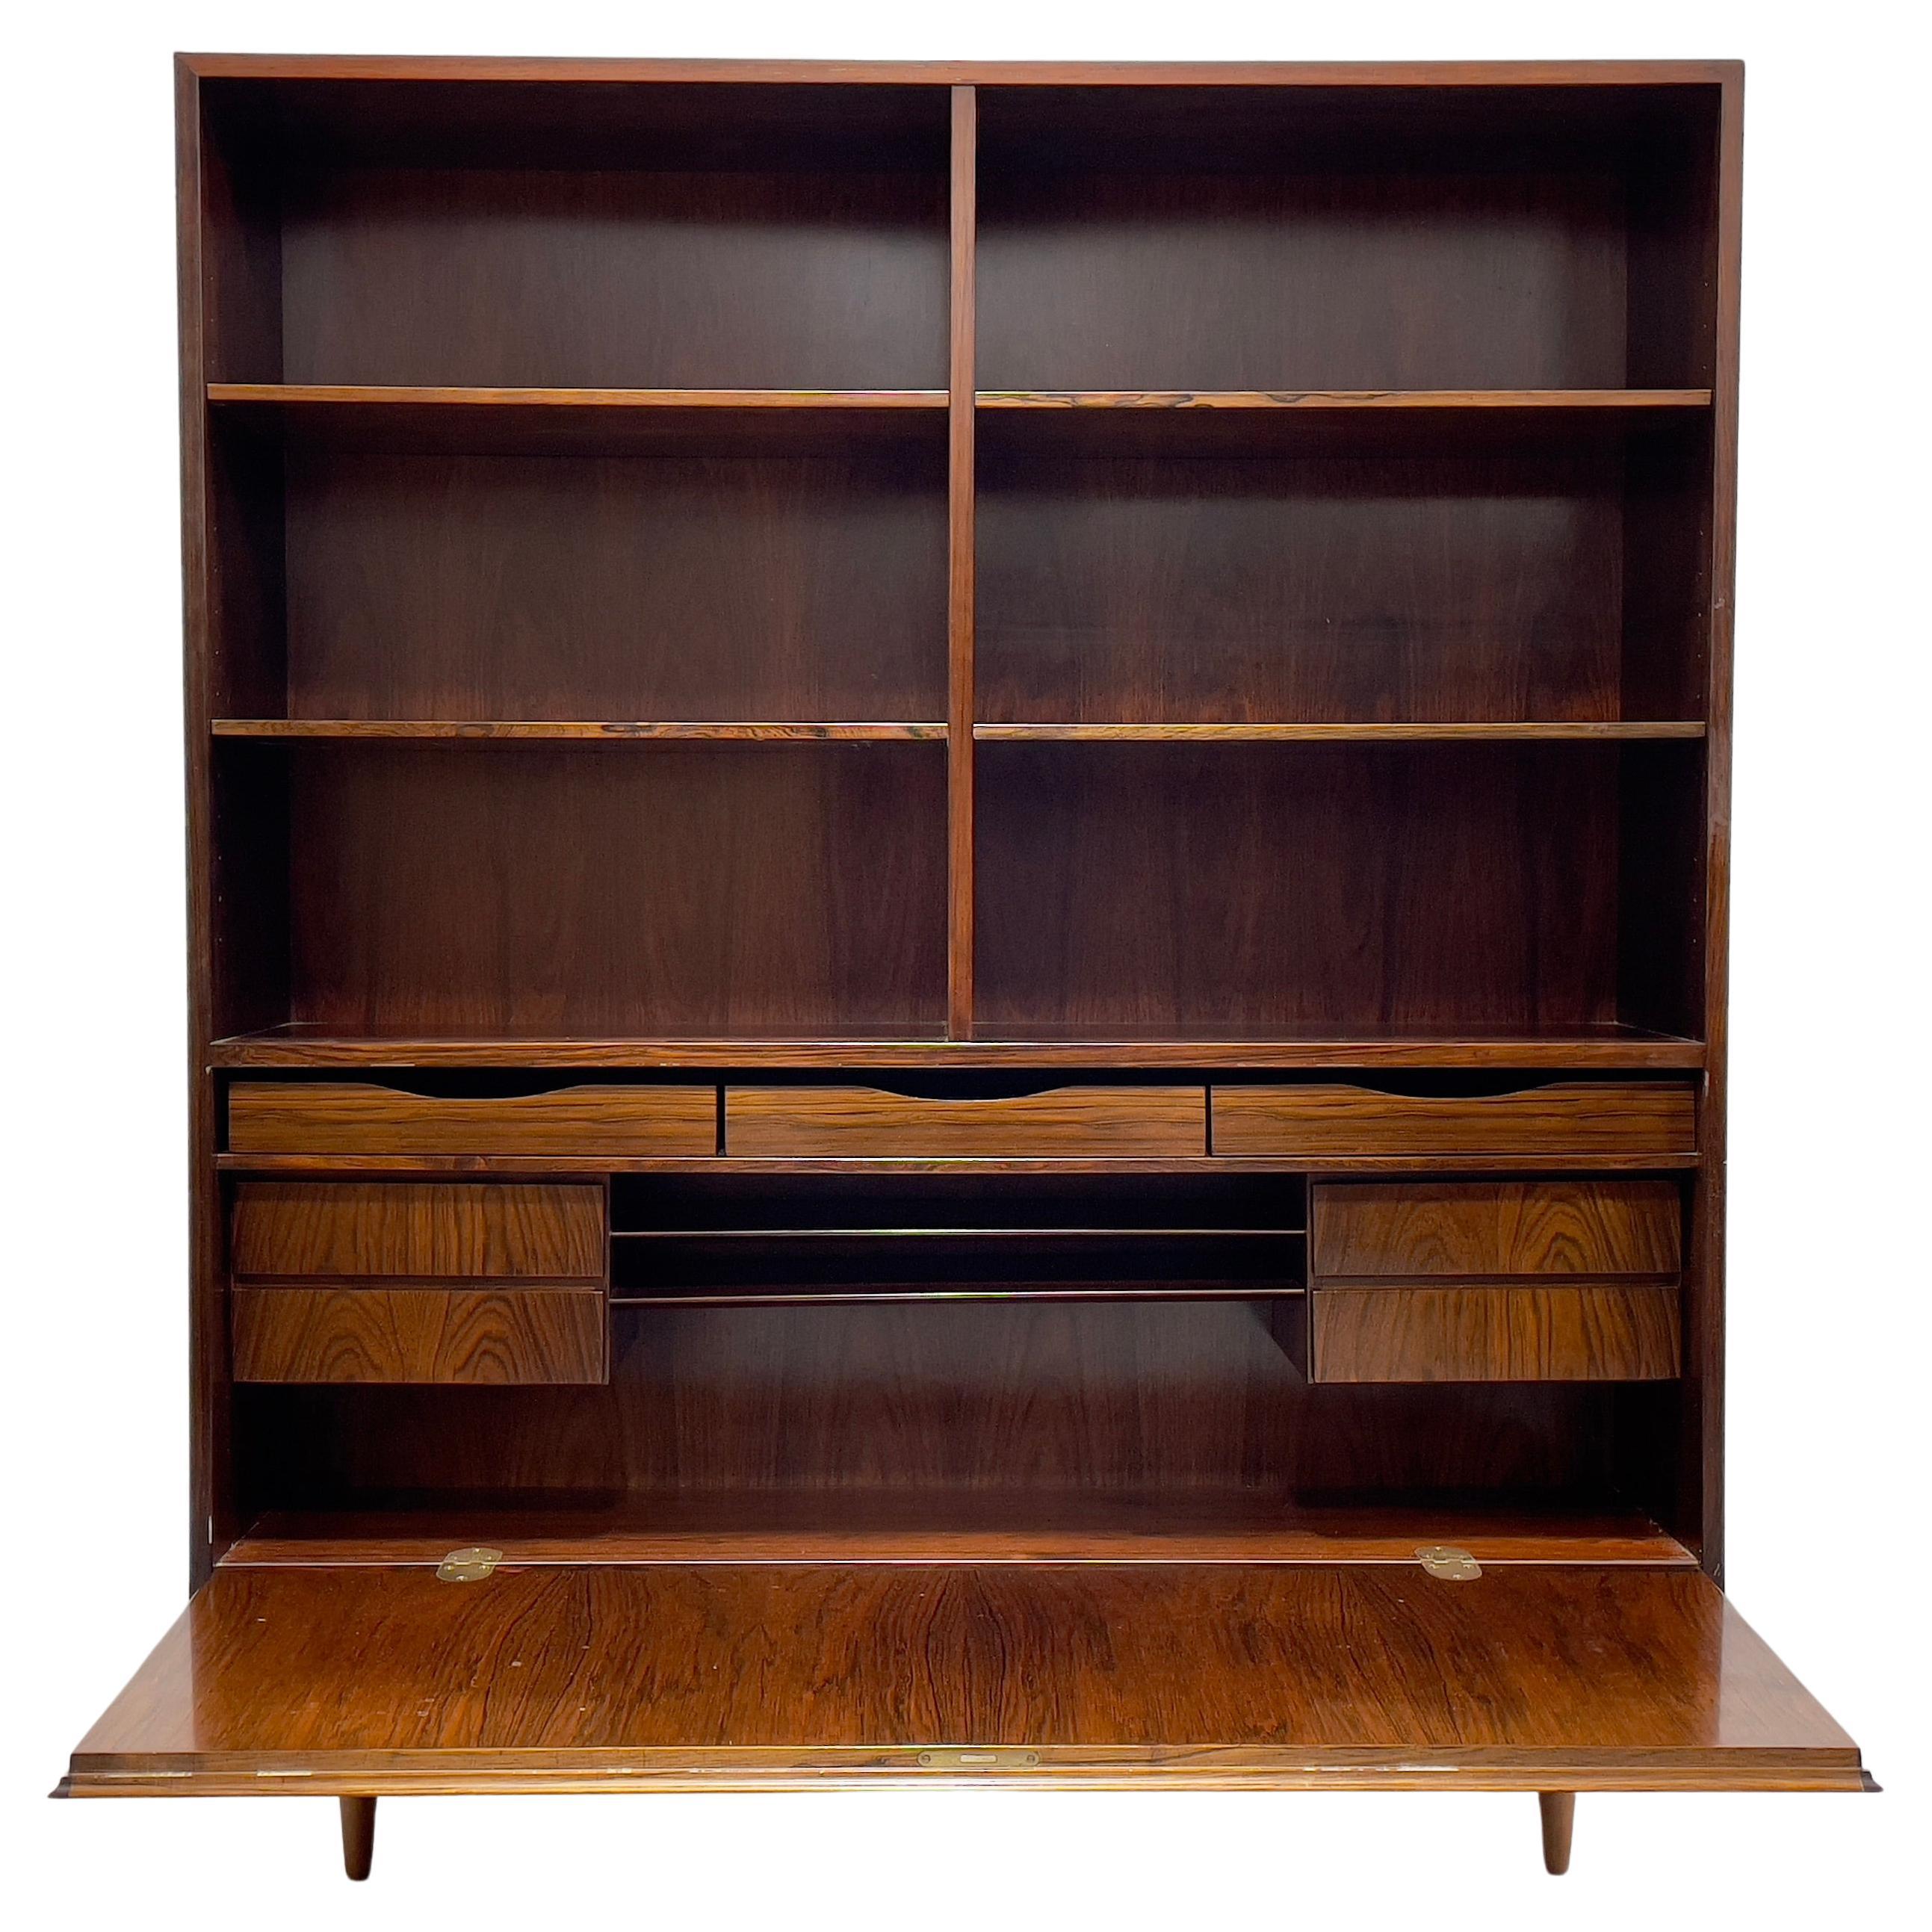 Exquisite Mid Century Modern ROSEWOOD Bücherregal / China Cabinet, ca. 1960er Jahre. Dieses beeindruckende Möbelstück verfügt über 6 Ablageflächen im oberen Bereich und alle Ablagen sind herausnehmbar und verstellbar. Der untere Bereich lässt sich